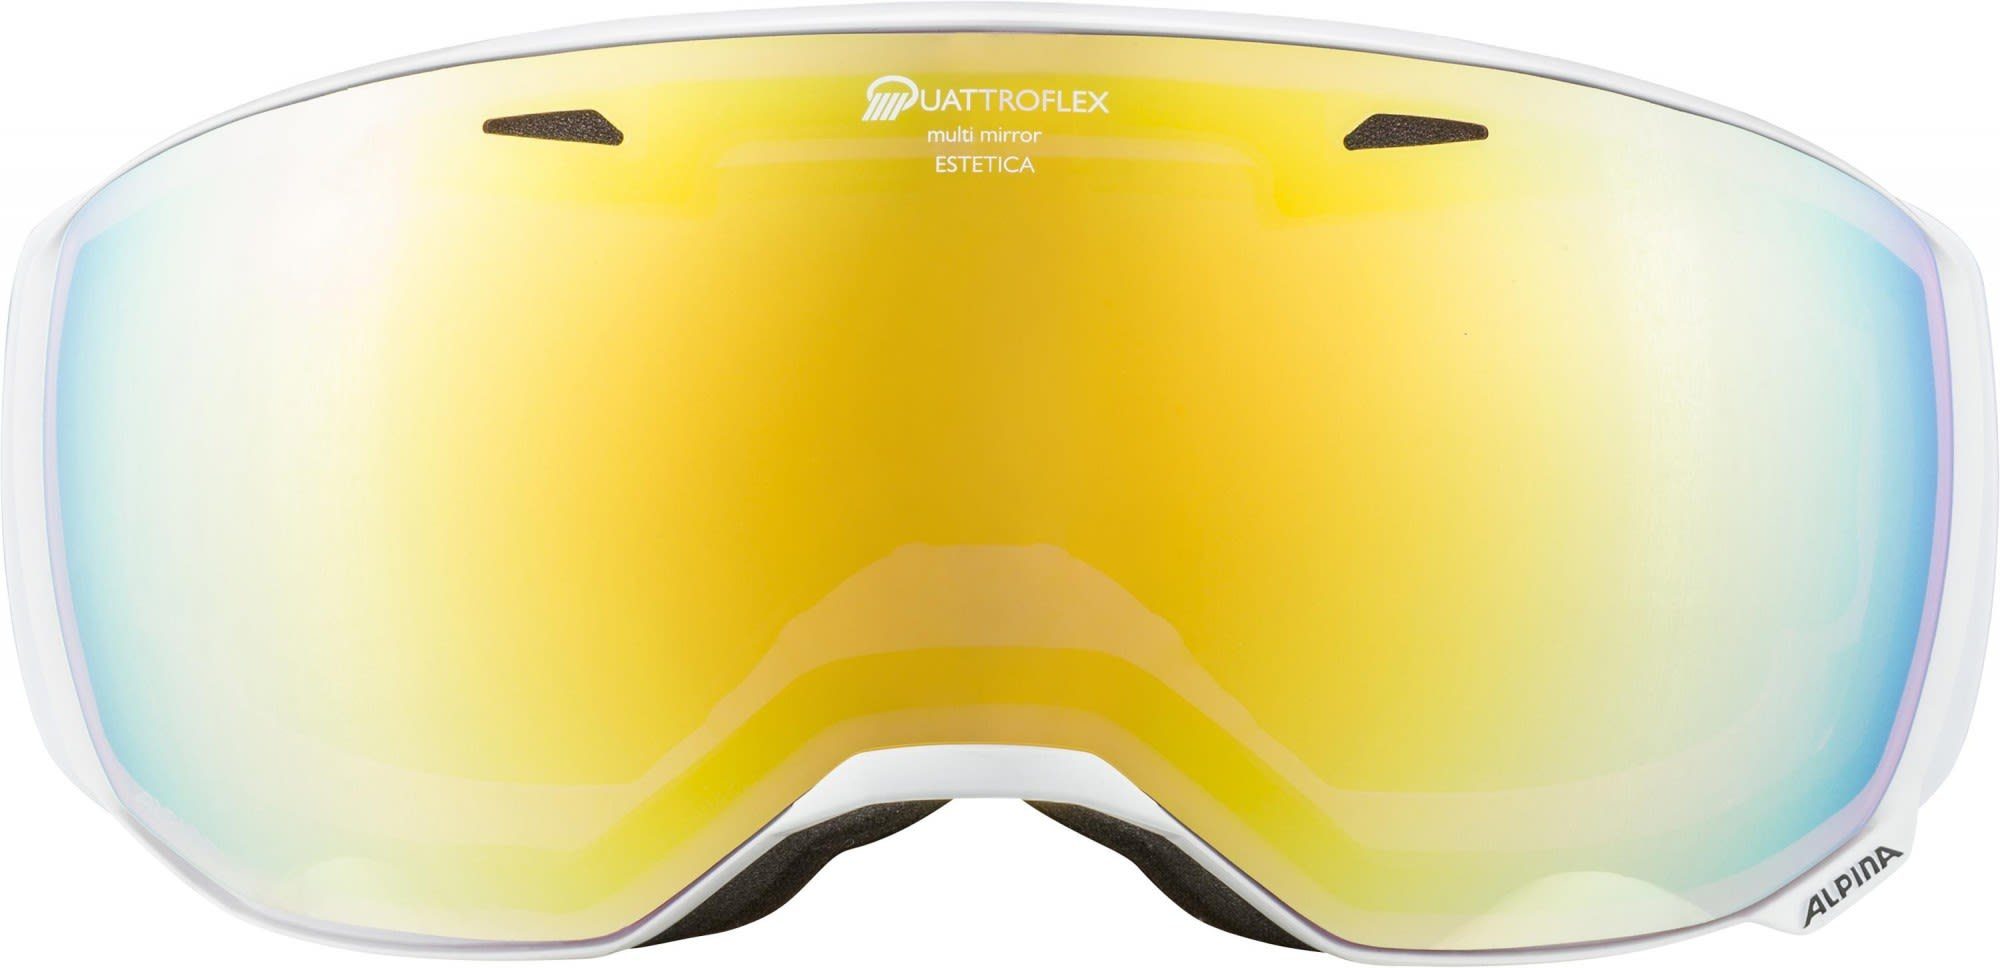 Alpina Sports Alpina Skibrille Skibrille Alpina Estetica Qhm Mirror White Gold 